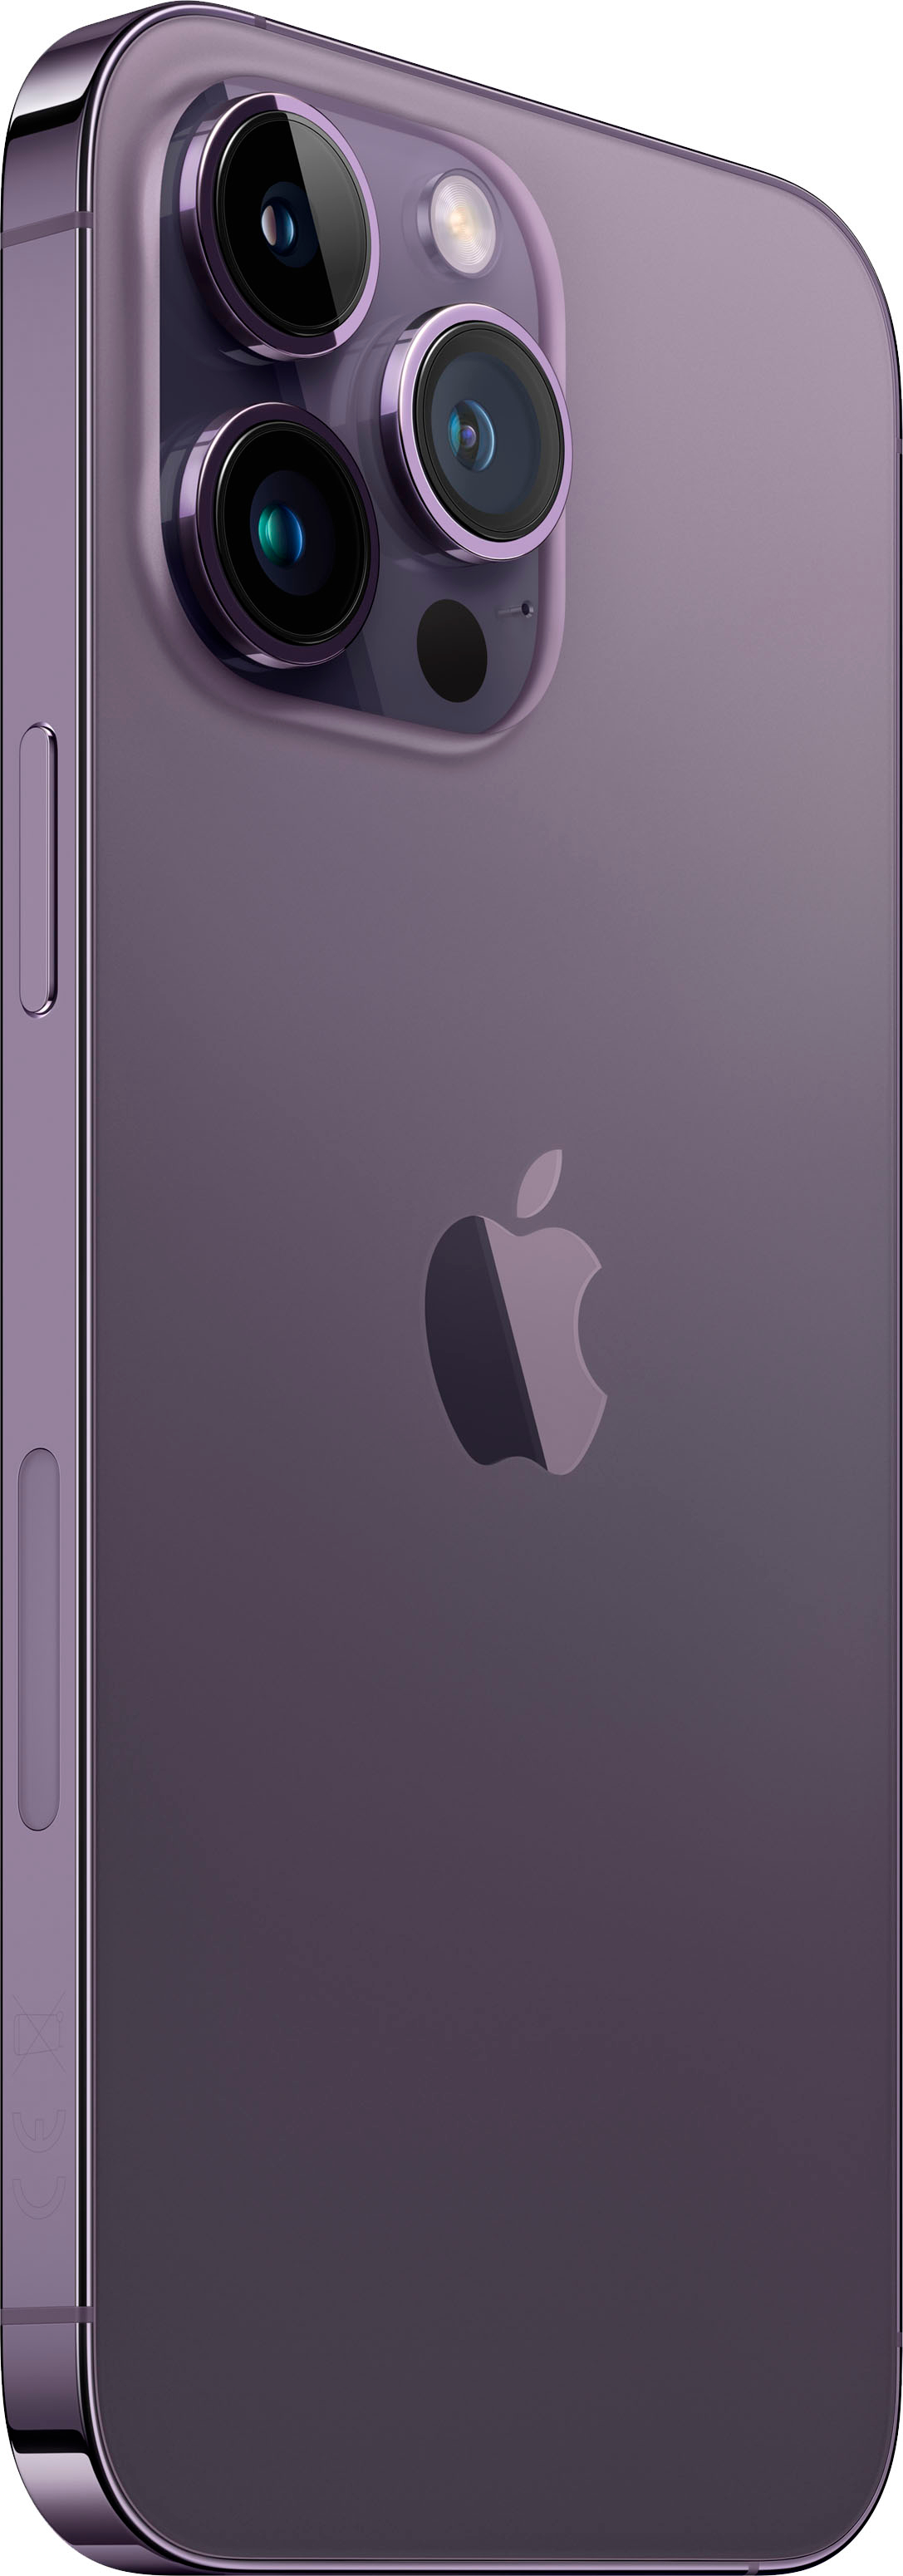 Apple iPhone 14 Pro Max 1TB Deep Purple (Verizon) MQ953LL/A - Best Buy